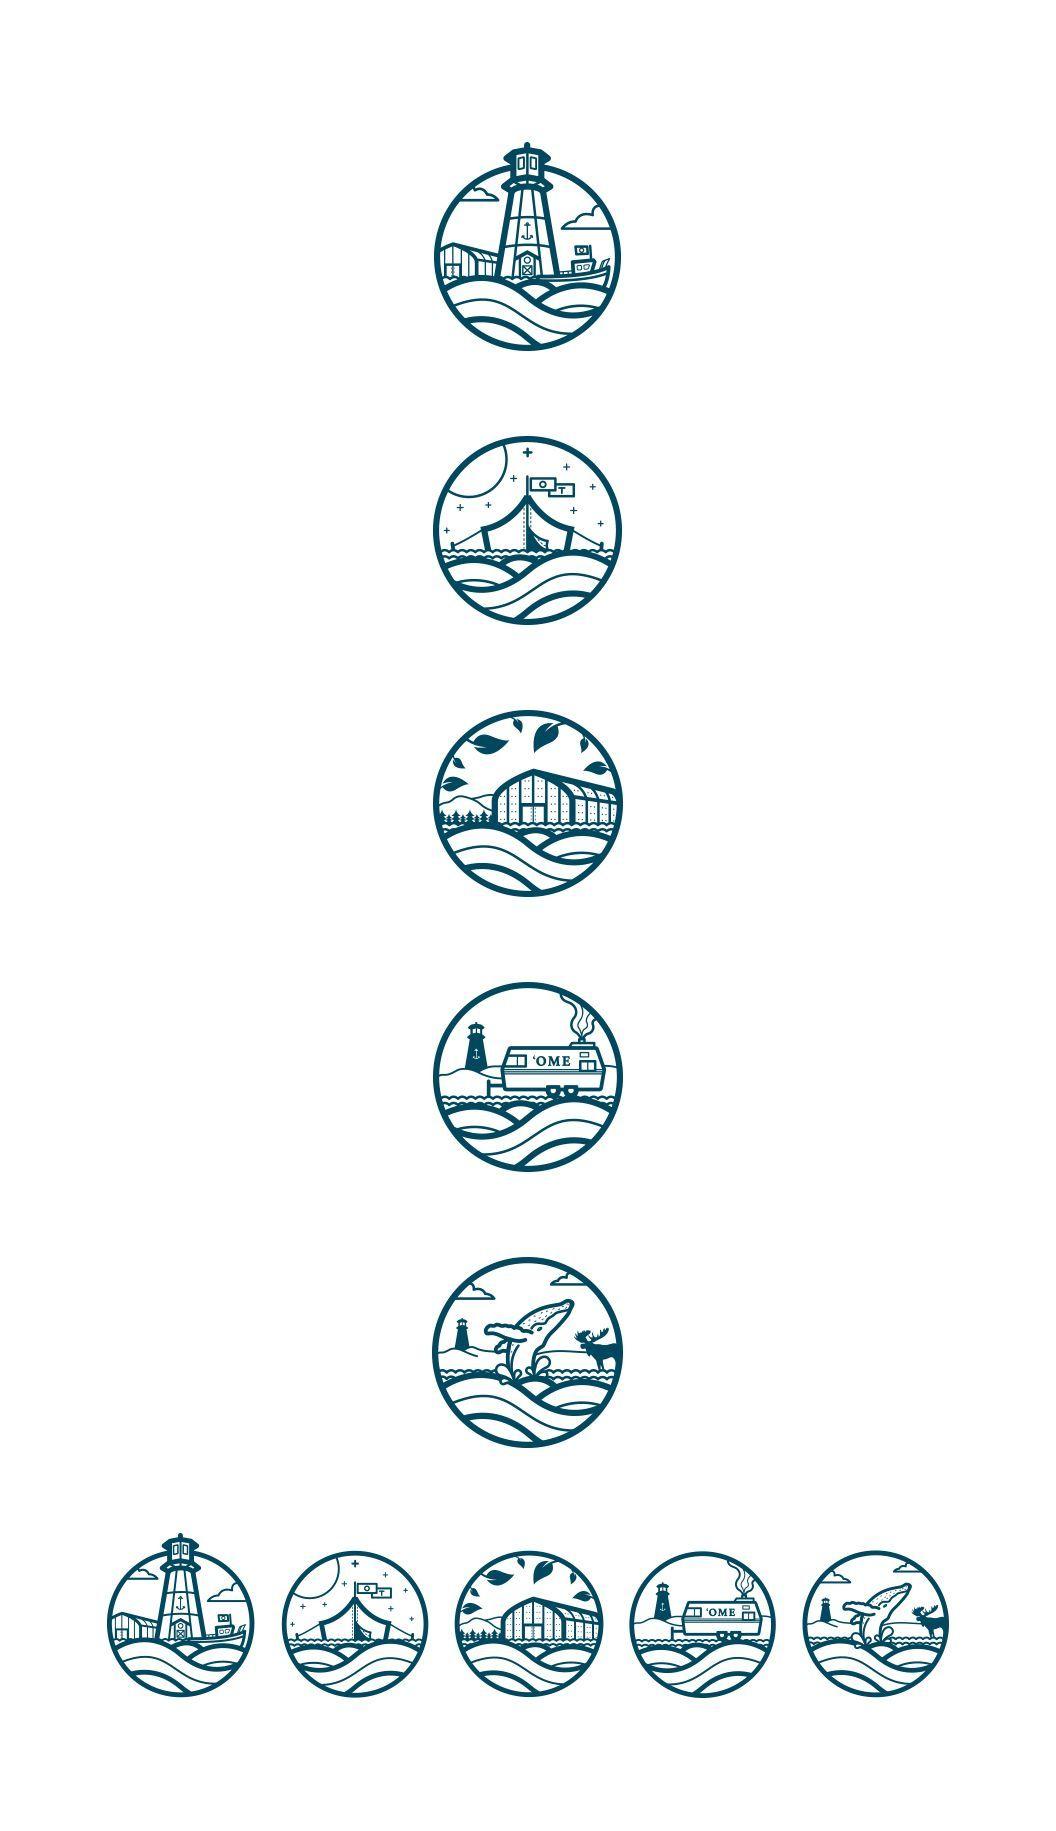 UN Building Logo - Puedes tomar la decisión de usar un elemento en común para los